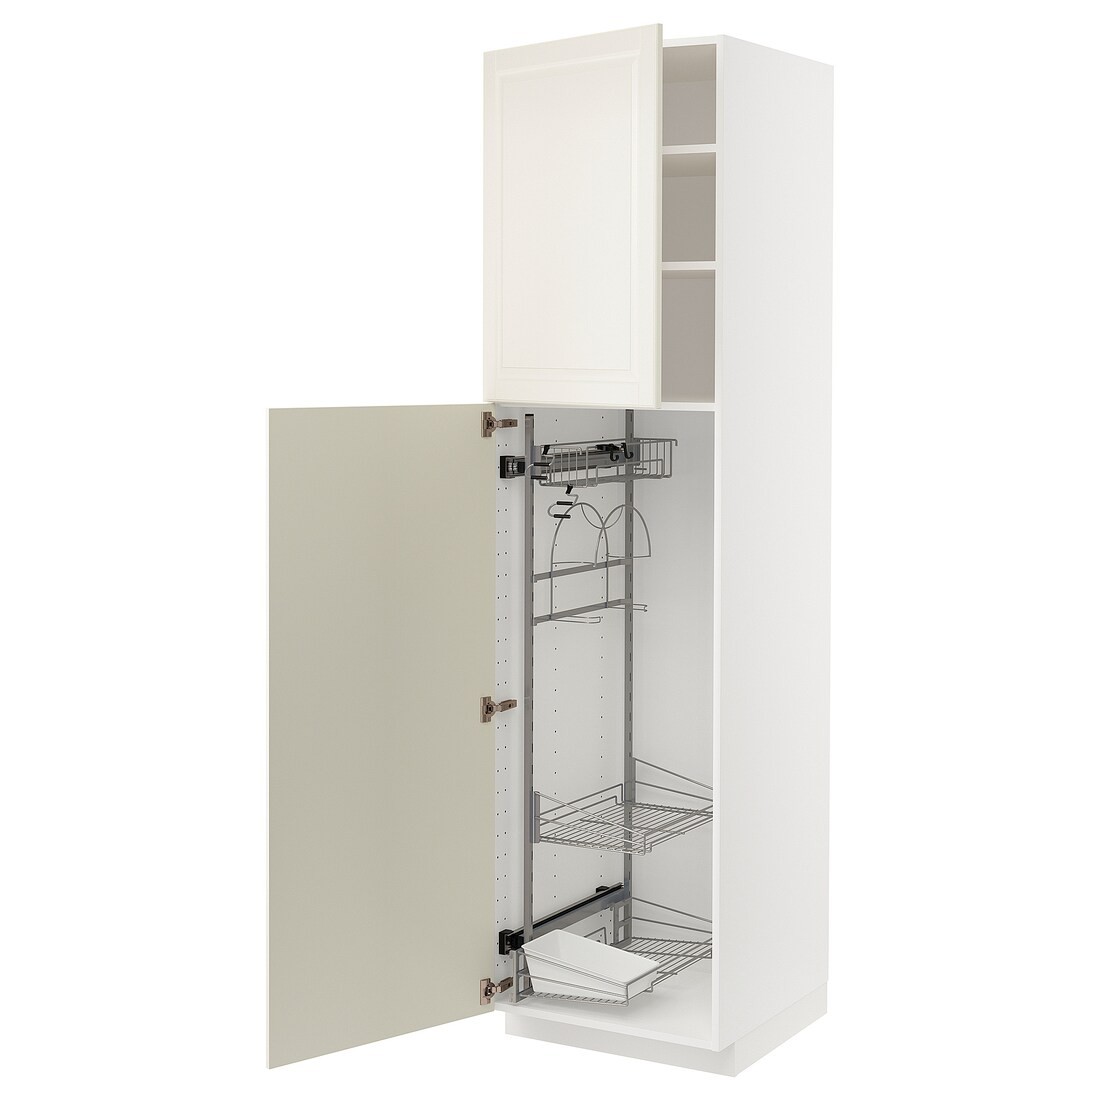 METOD МЕТОД Висока шафа з відділенням для аксесуарів для прибирання, білий / Bodbyn кремовий, 60x60x220 см